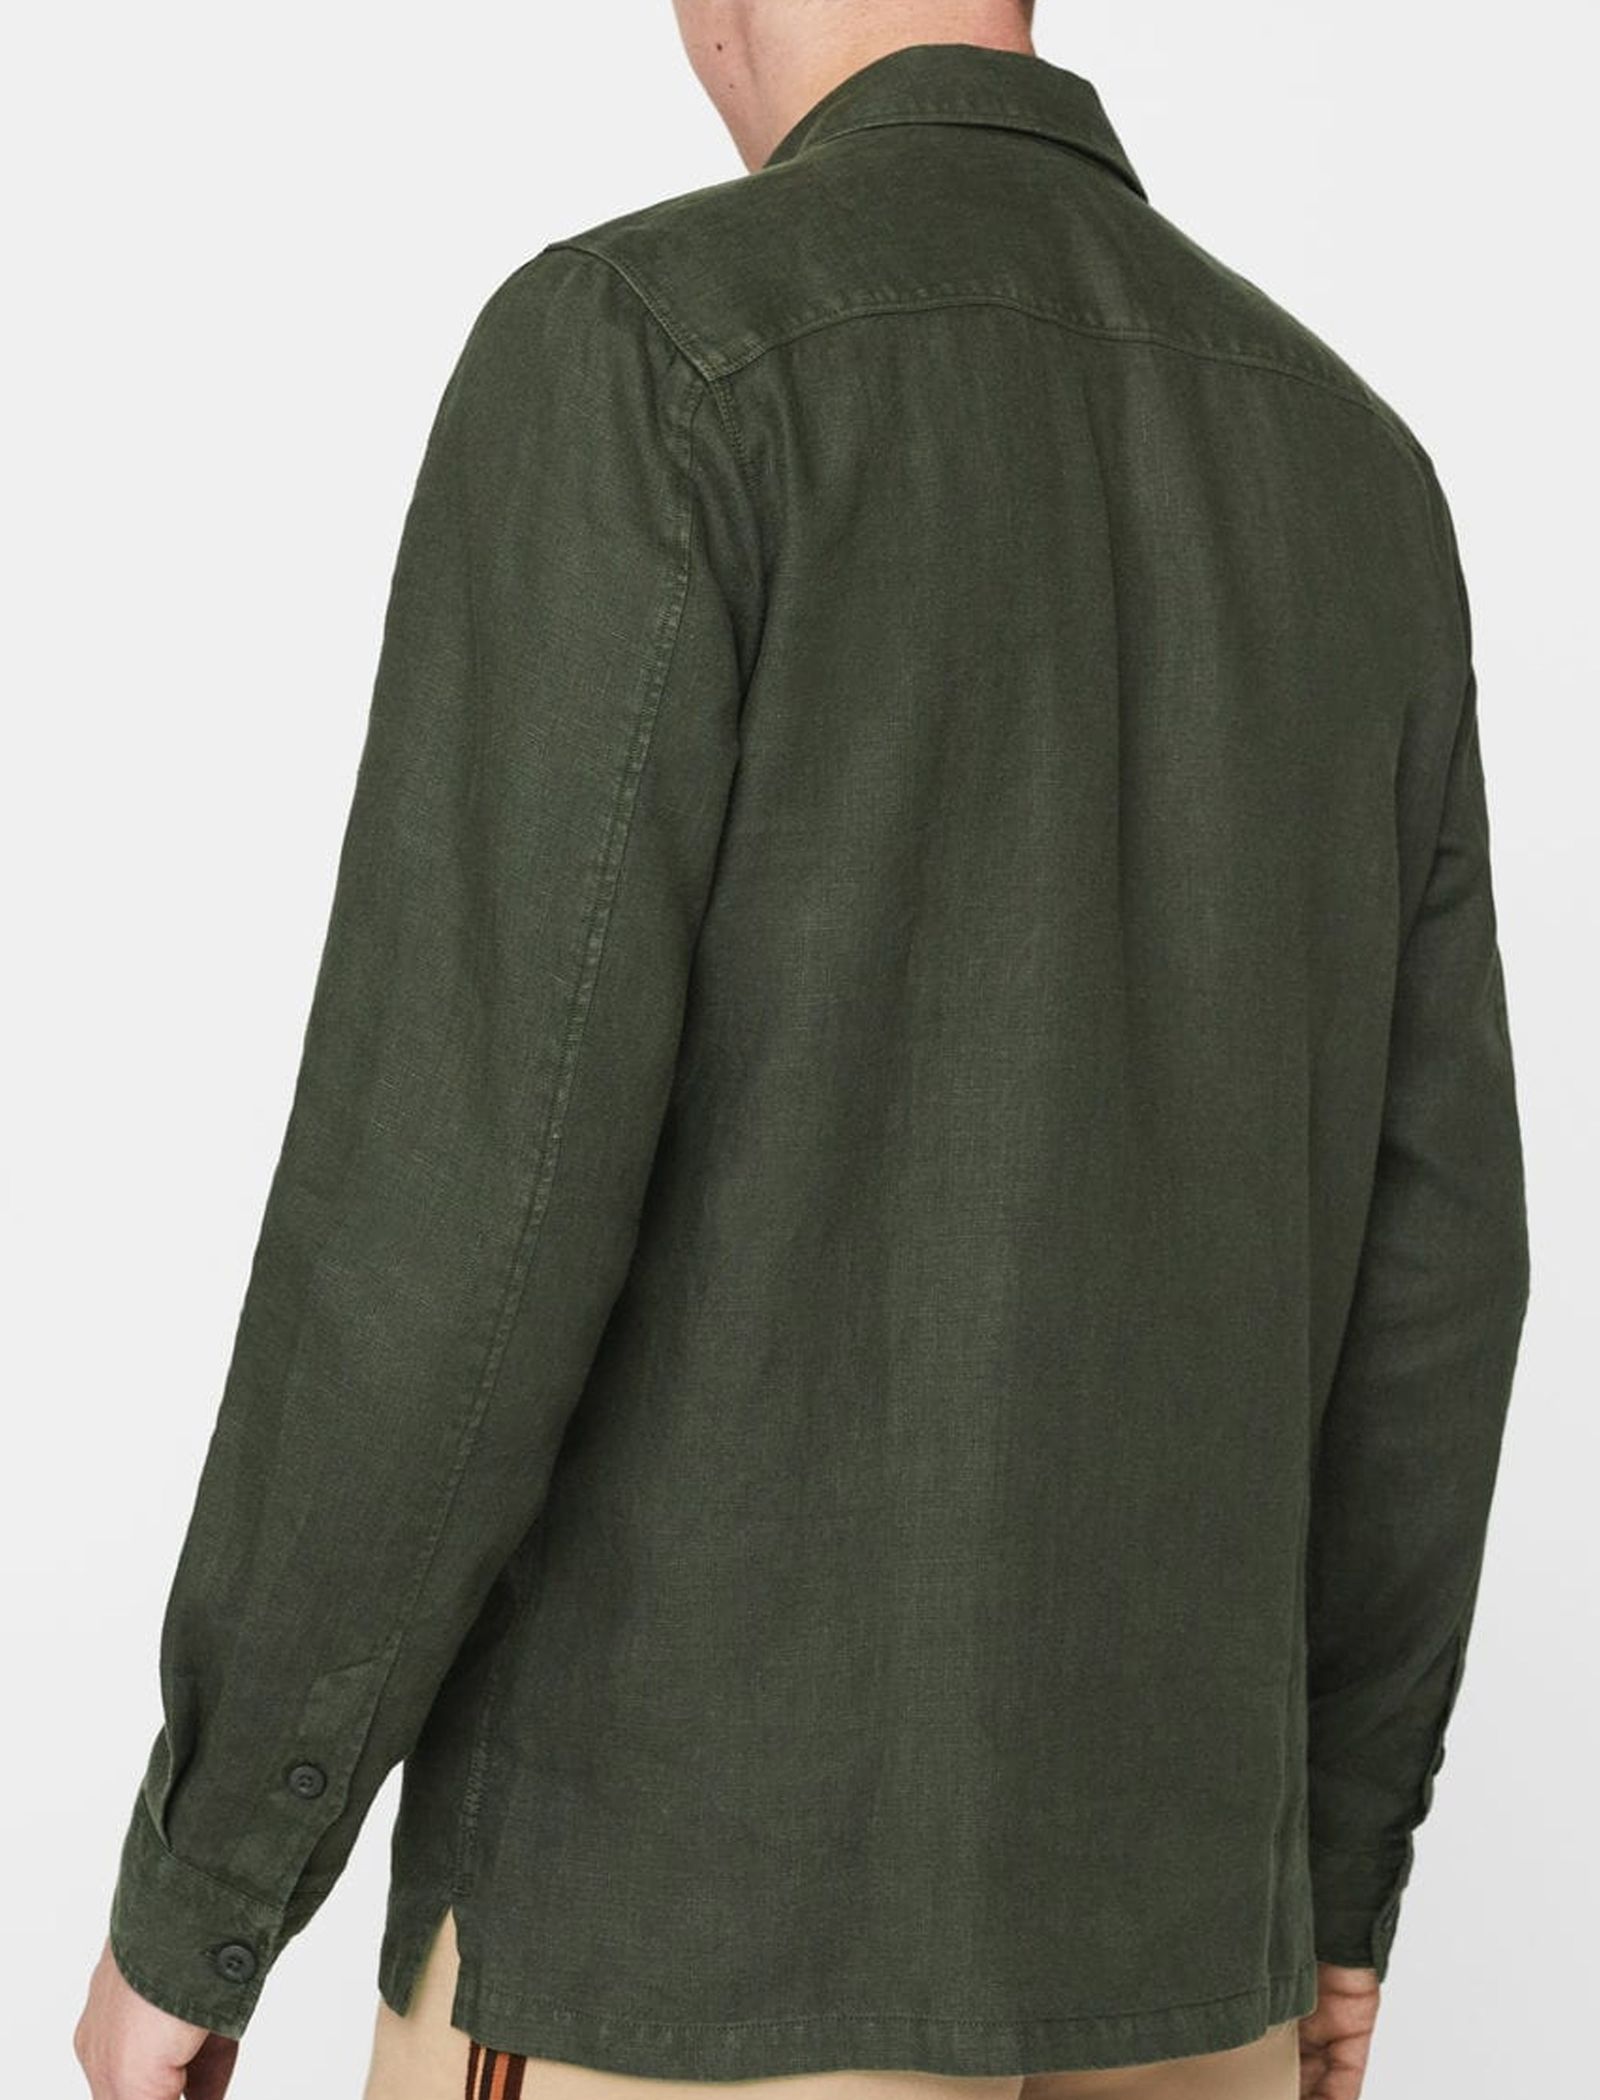 پیراهن آستین بلند مردانه - مانگو - سبز - 4